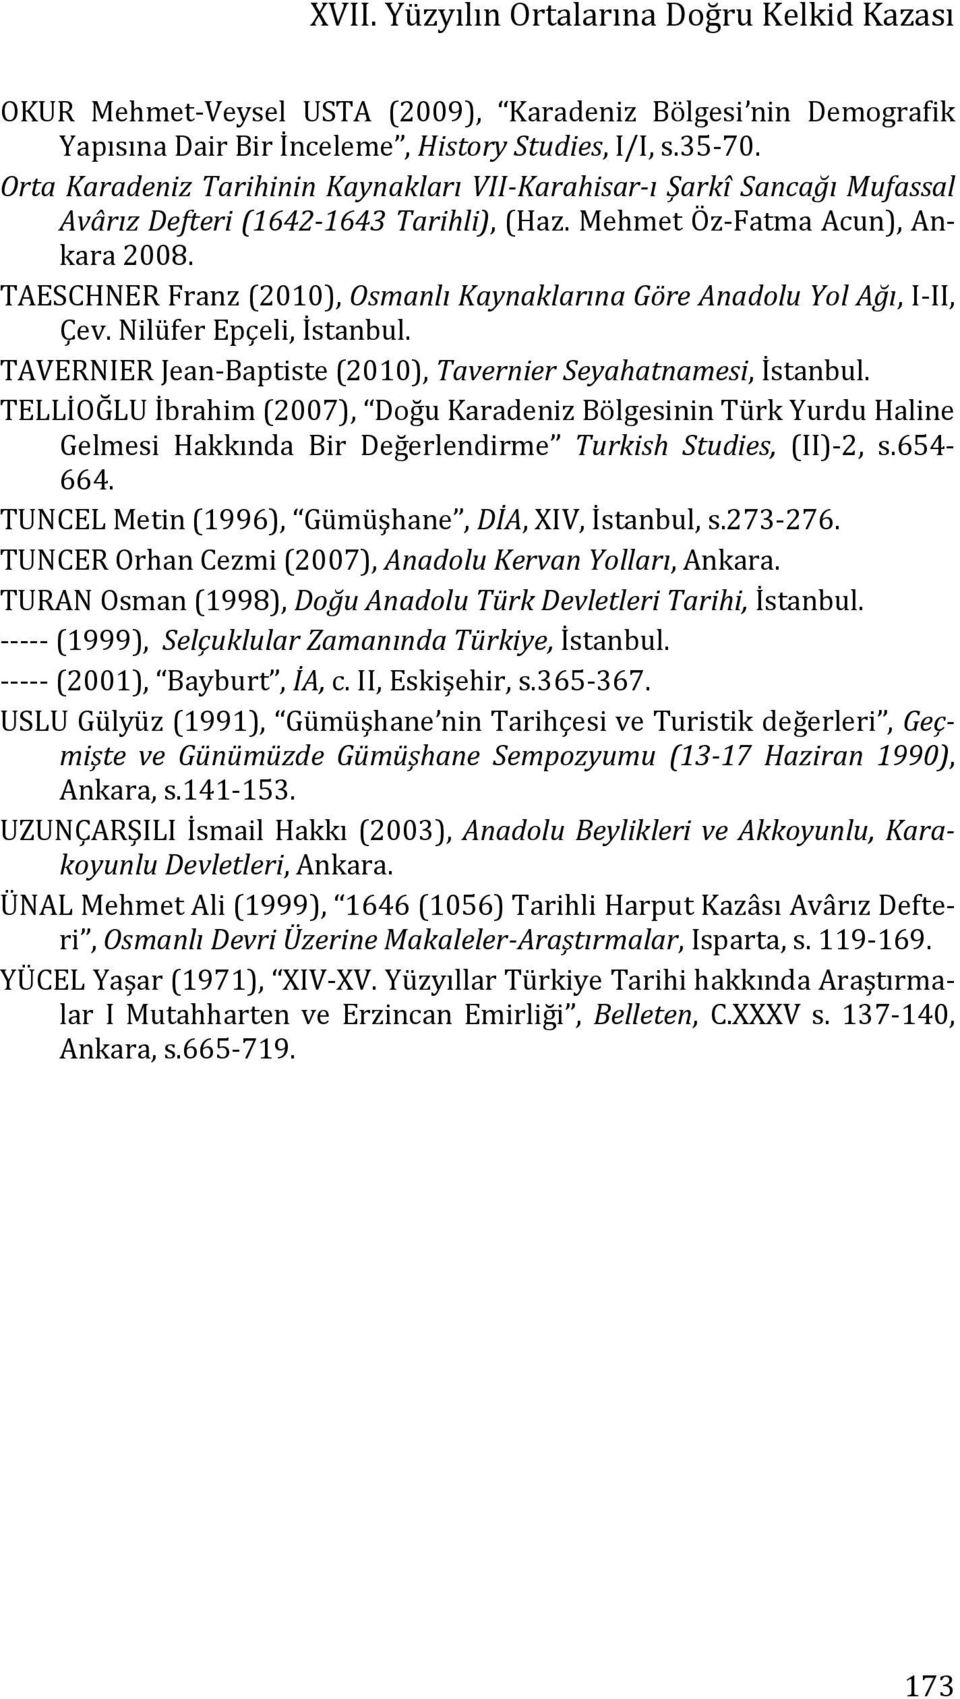 TAESCHNER Franz (2010), Osmanlı Kaynaklarına Göre Anadolu Yol Ağı, I-II, Çev. Nilüfer Epçeli, İstanbul. TAVERNIER Jean-Baptiste (2010), Tavernier Seyahatnamesi, İstanbul.